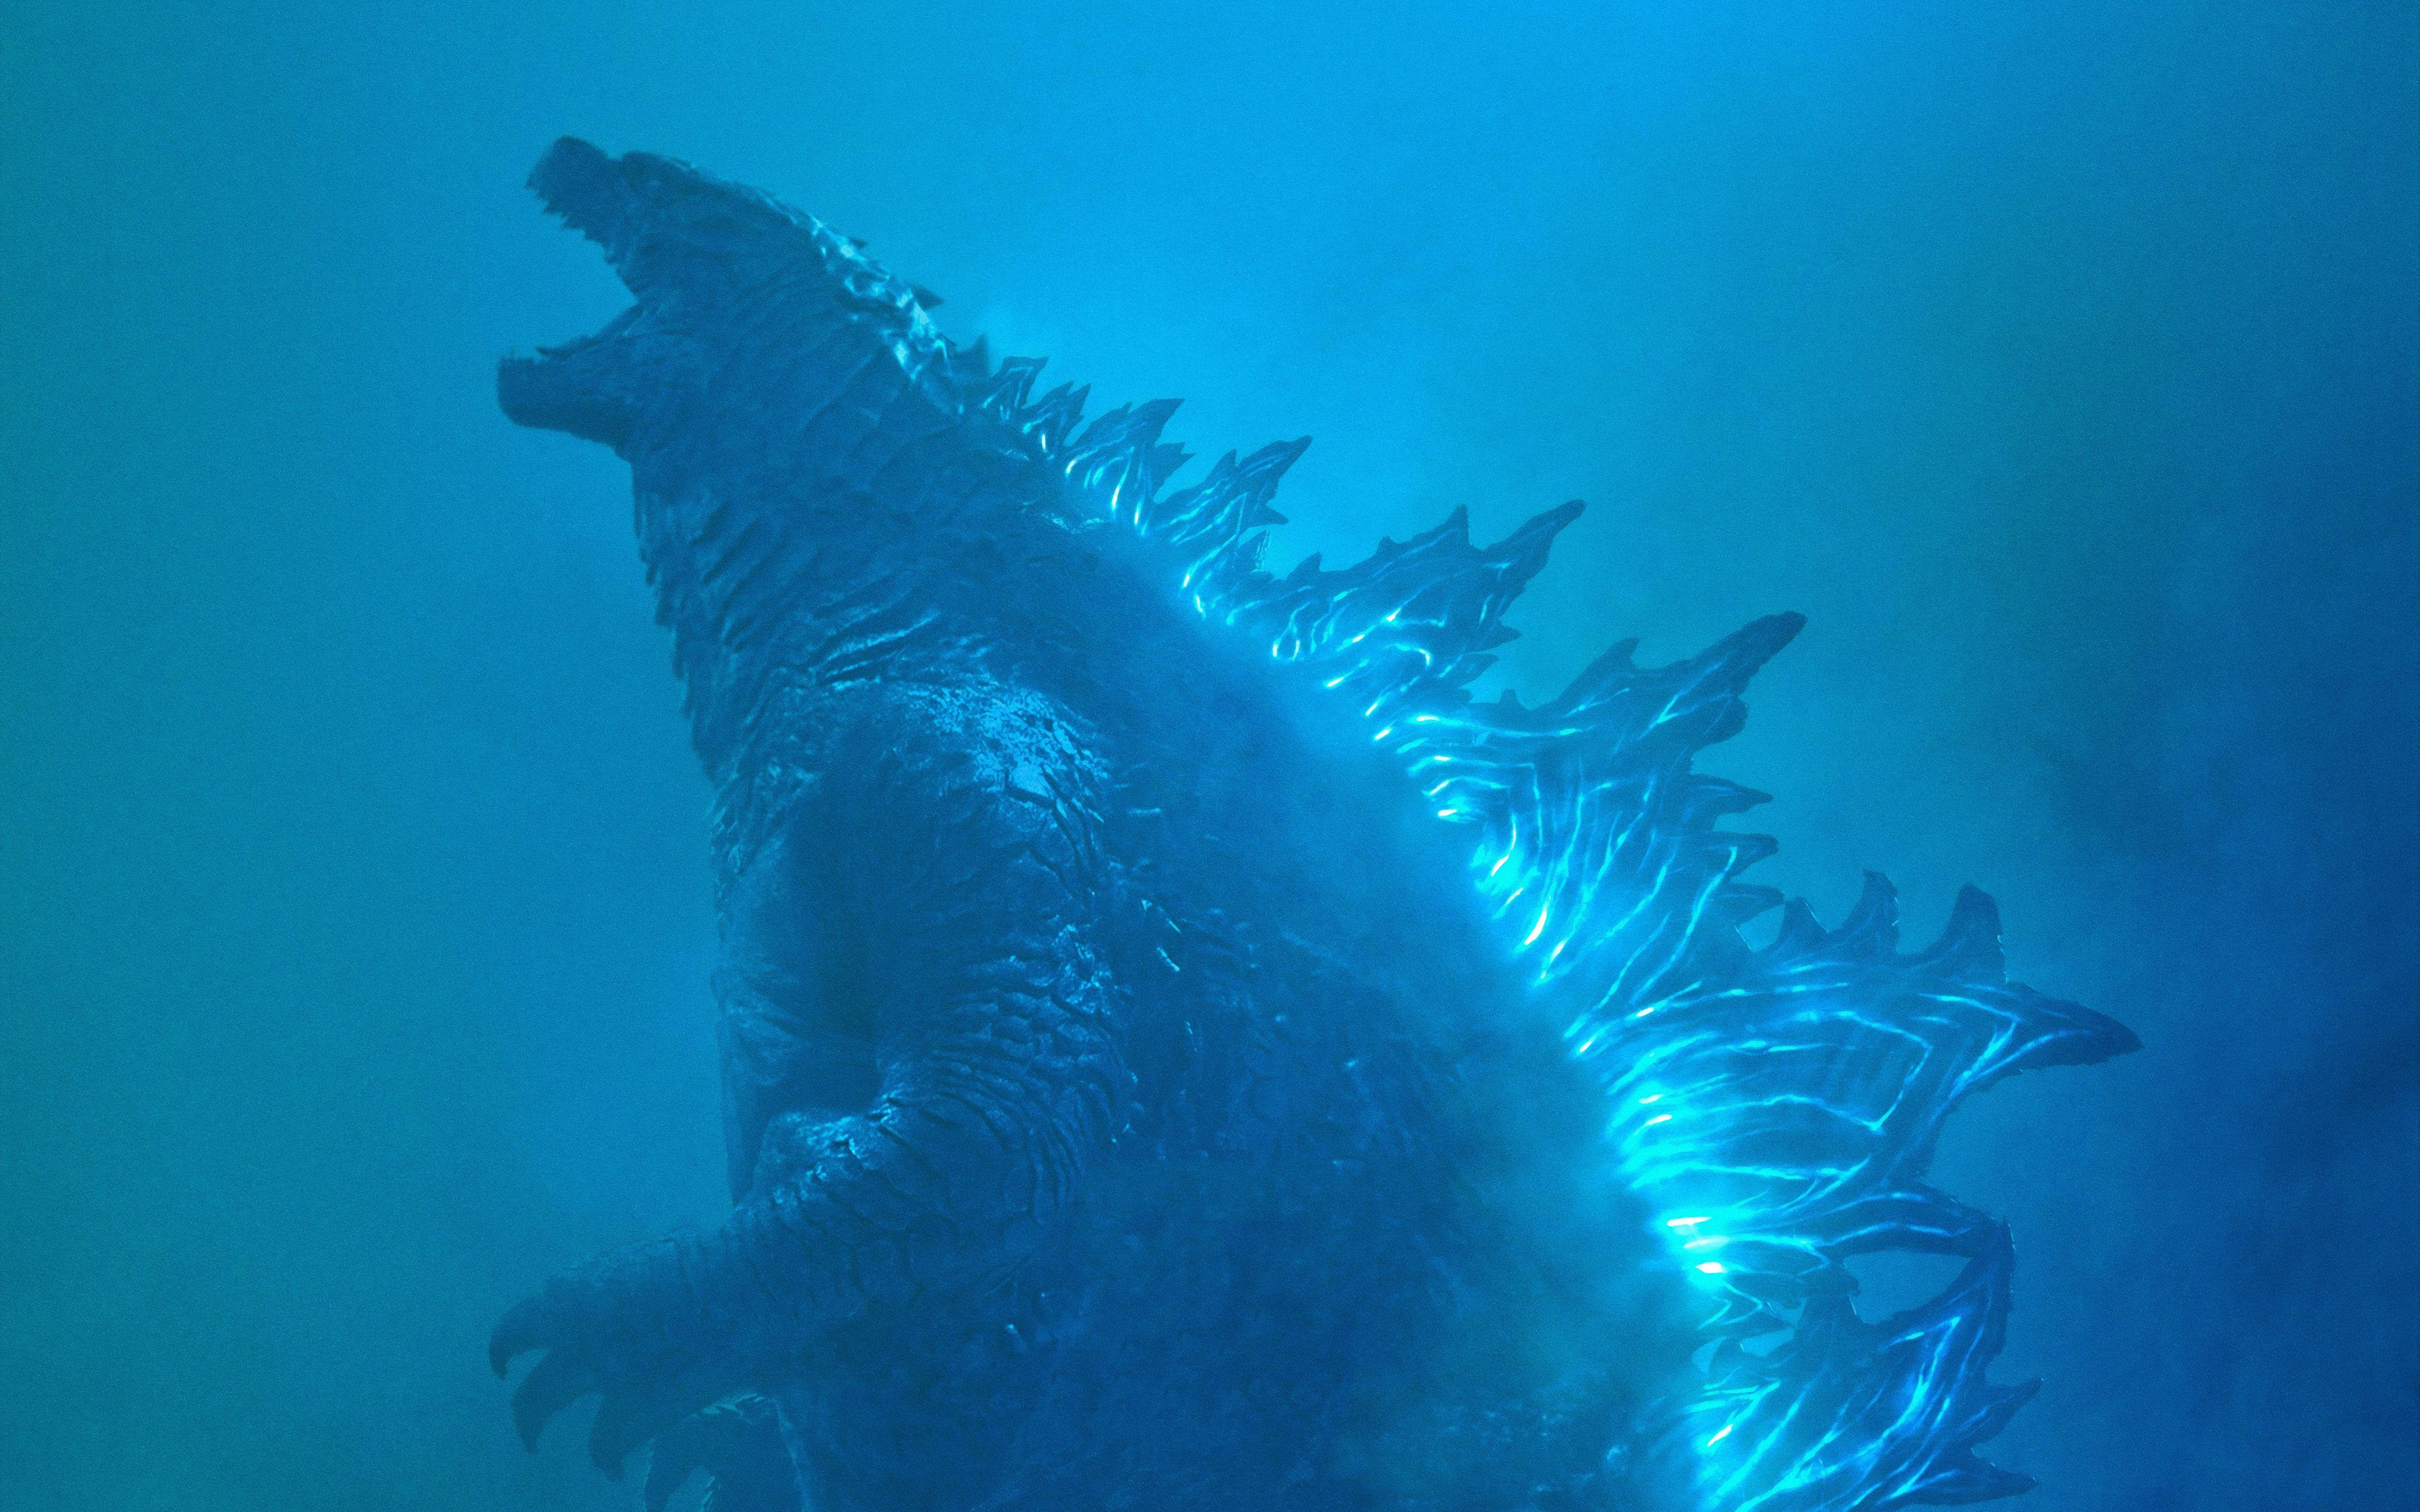 5120x3200 Hình nền Godzilla: Vua của các quái vật, 2019, độ phân giải cao, 5K, Phim